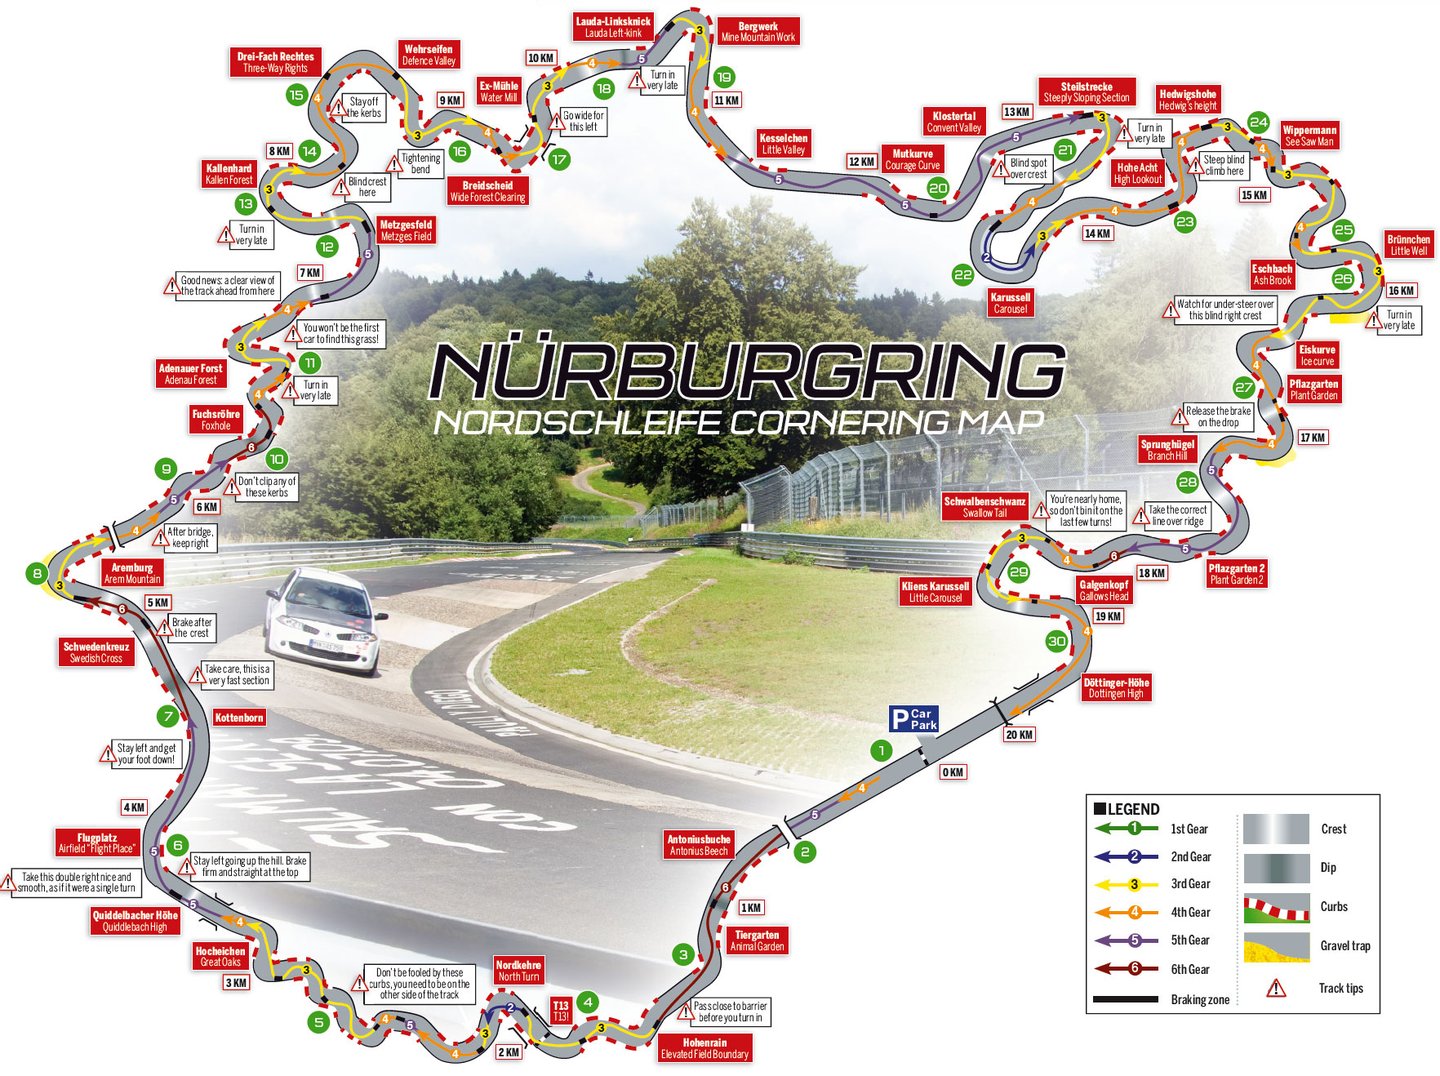 nurburgring-cornering-map-guide-download